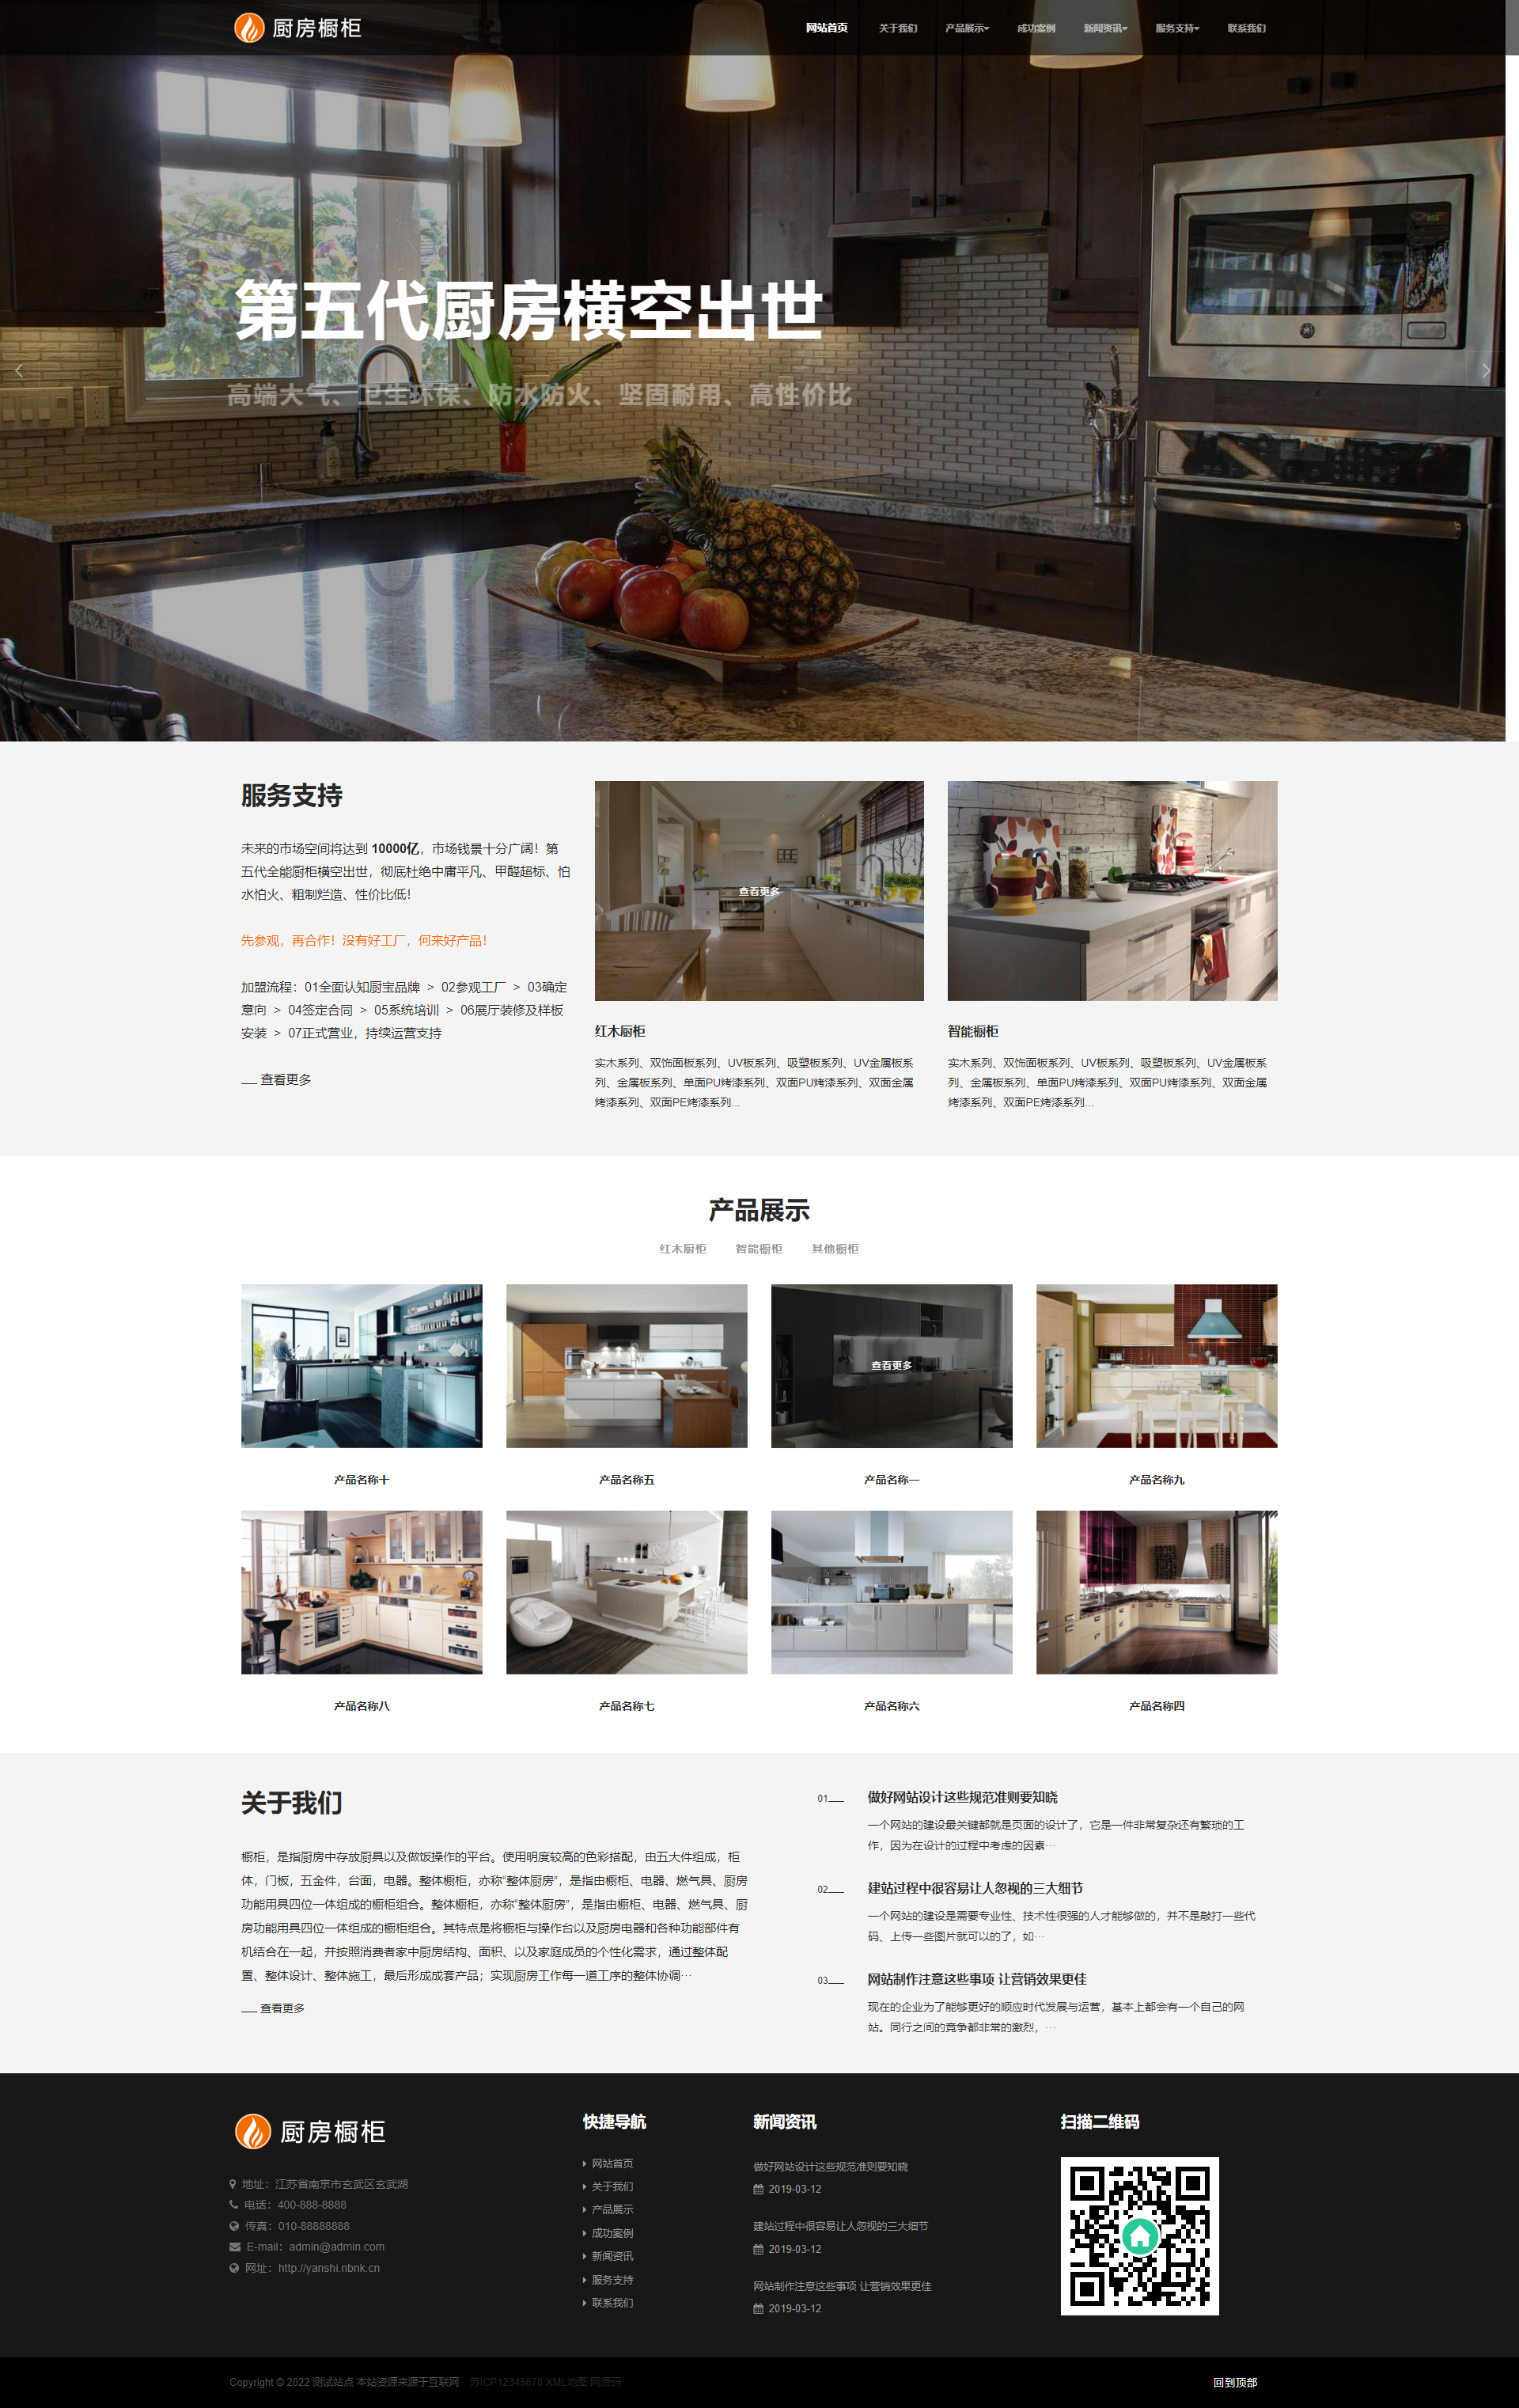 智能家居橱柜设计类适配手机端网站pbootcms模板 HTML5厨房装修设计网站源码下载